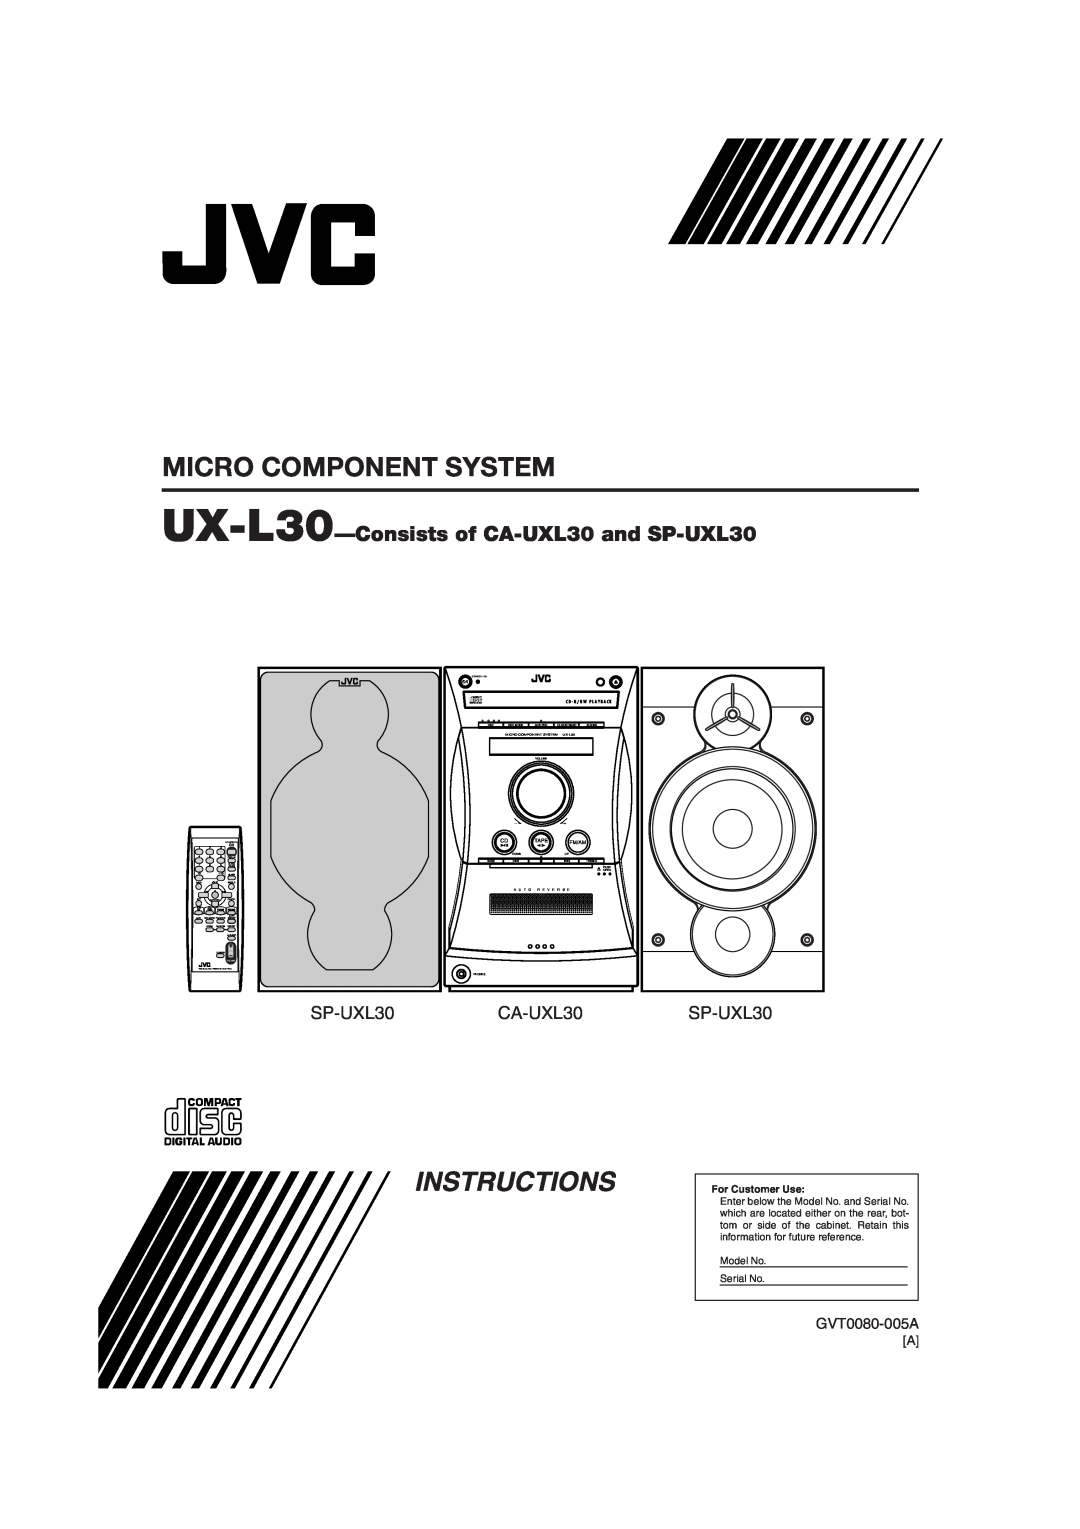 JVC manual Instructions, GVT0080-005A, Micro Component System, UX-L30-Consistsof CA-UXL30and SP-UXL30, CA-UXL30SP-UXL30 